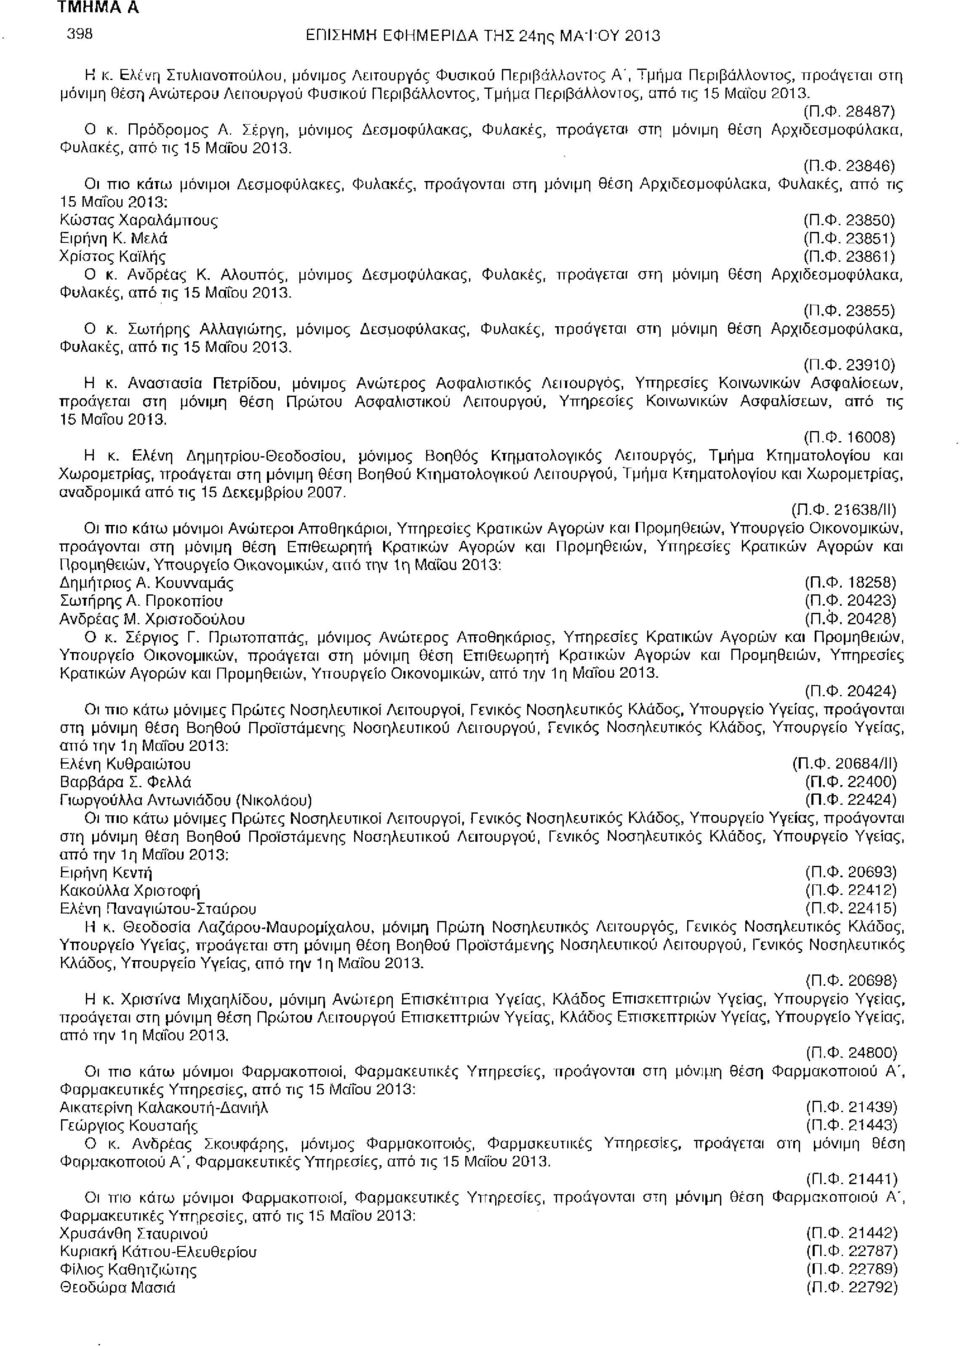 (Π.Φ. 28487) Ο κ. Πρόδρομος Α. Σέργη, μόνιμος Δεσμοφύλακας, Φυλακές, προάγεται στη μόνιμη θέση Αρχιδεσμοφύλακα, Φυλακές, από τις 15 Μαΐου 2013. (Π.Φ. 23846) Οι πιο κάτω μόνιμοι Δεσμοφύλακες, Φυλακές, προάγονται στη μόνιμη θέση Αρχιδεσμοφύλακα, Φυλακές, από τις 15 Μαΐου 2013: Κώστας Χαραλάμπους (Π.